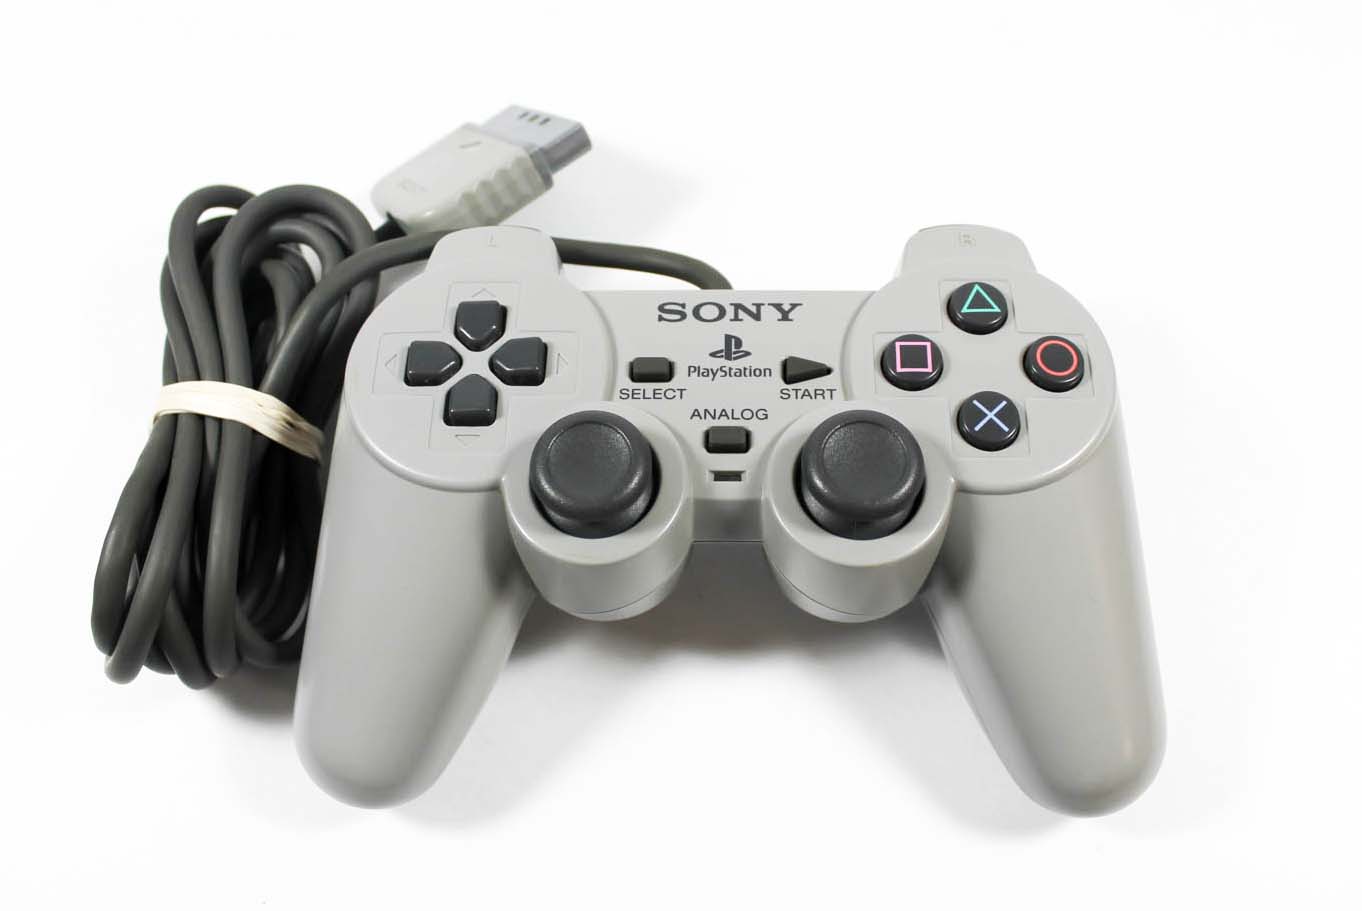 Le Dual Analog Controller, vous remarquerez la ressemblance des sticks avec les dernières manettes de Sony (PS4 et PS5)